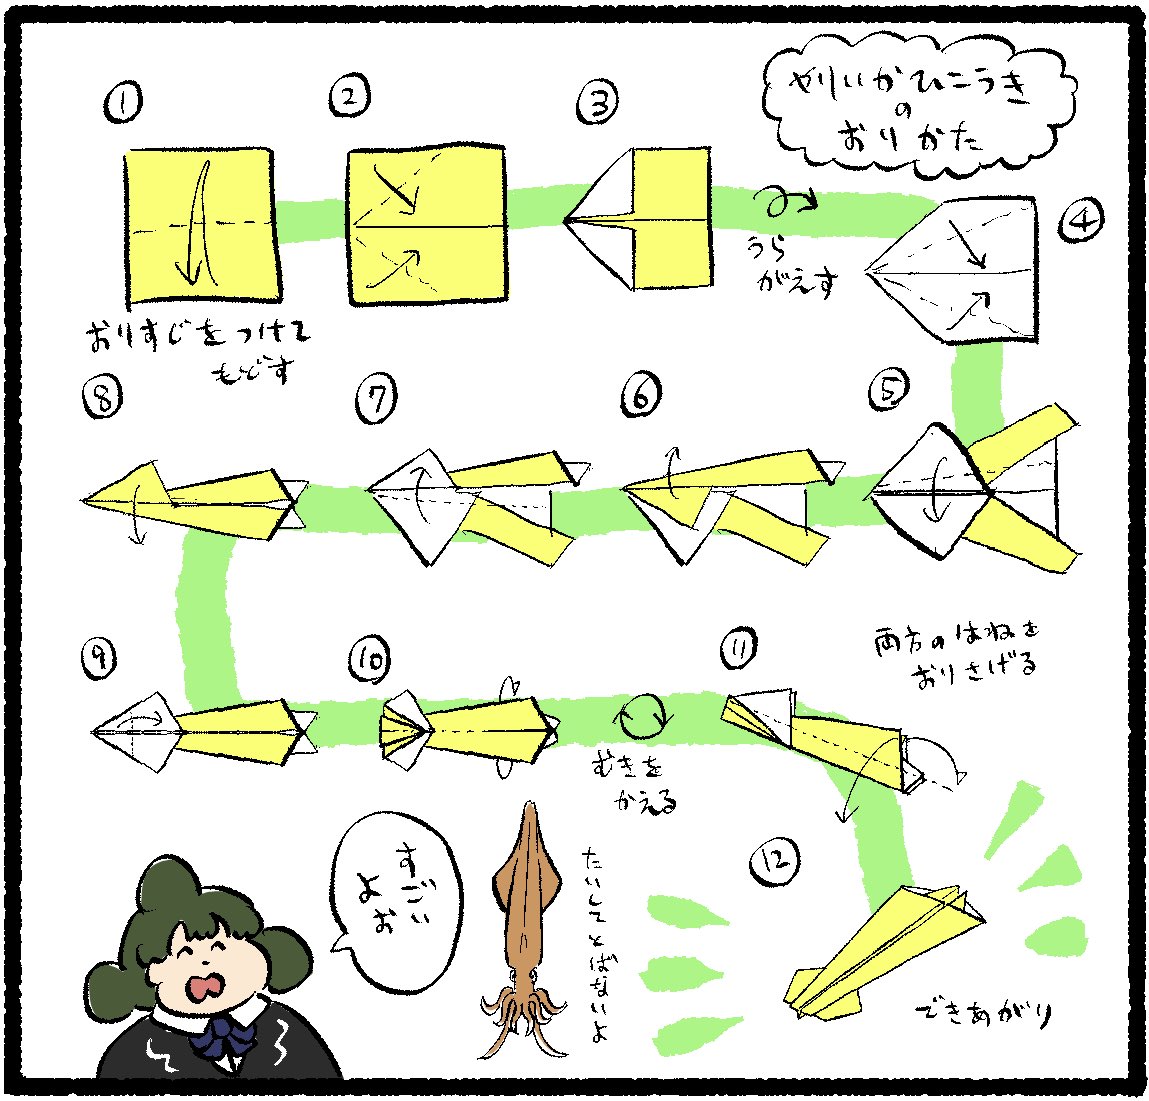 たいしてとばない紙飛行機の折り方もおまけにあるからぜひ見てね omocoro.jp/comic/405793/ #デーリィズ #デ〜リィズ